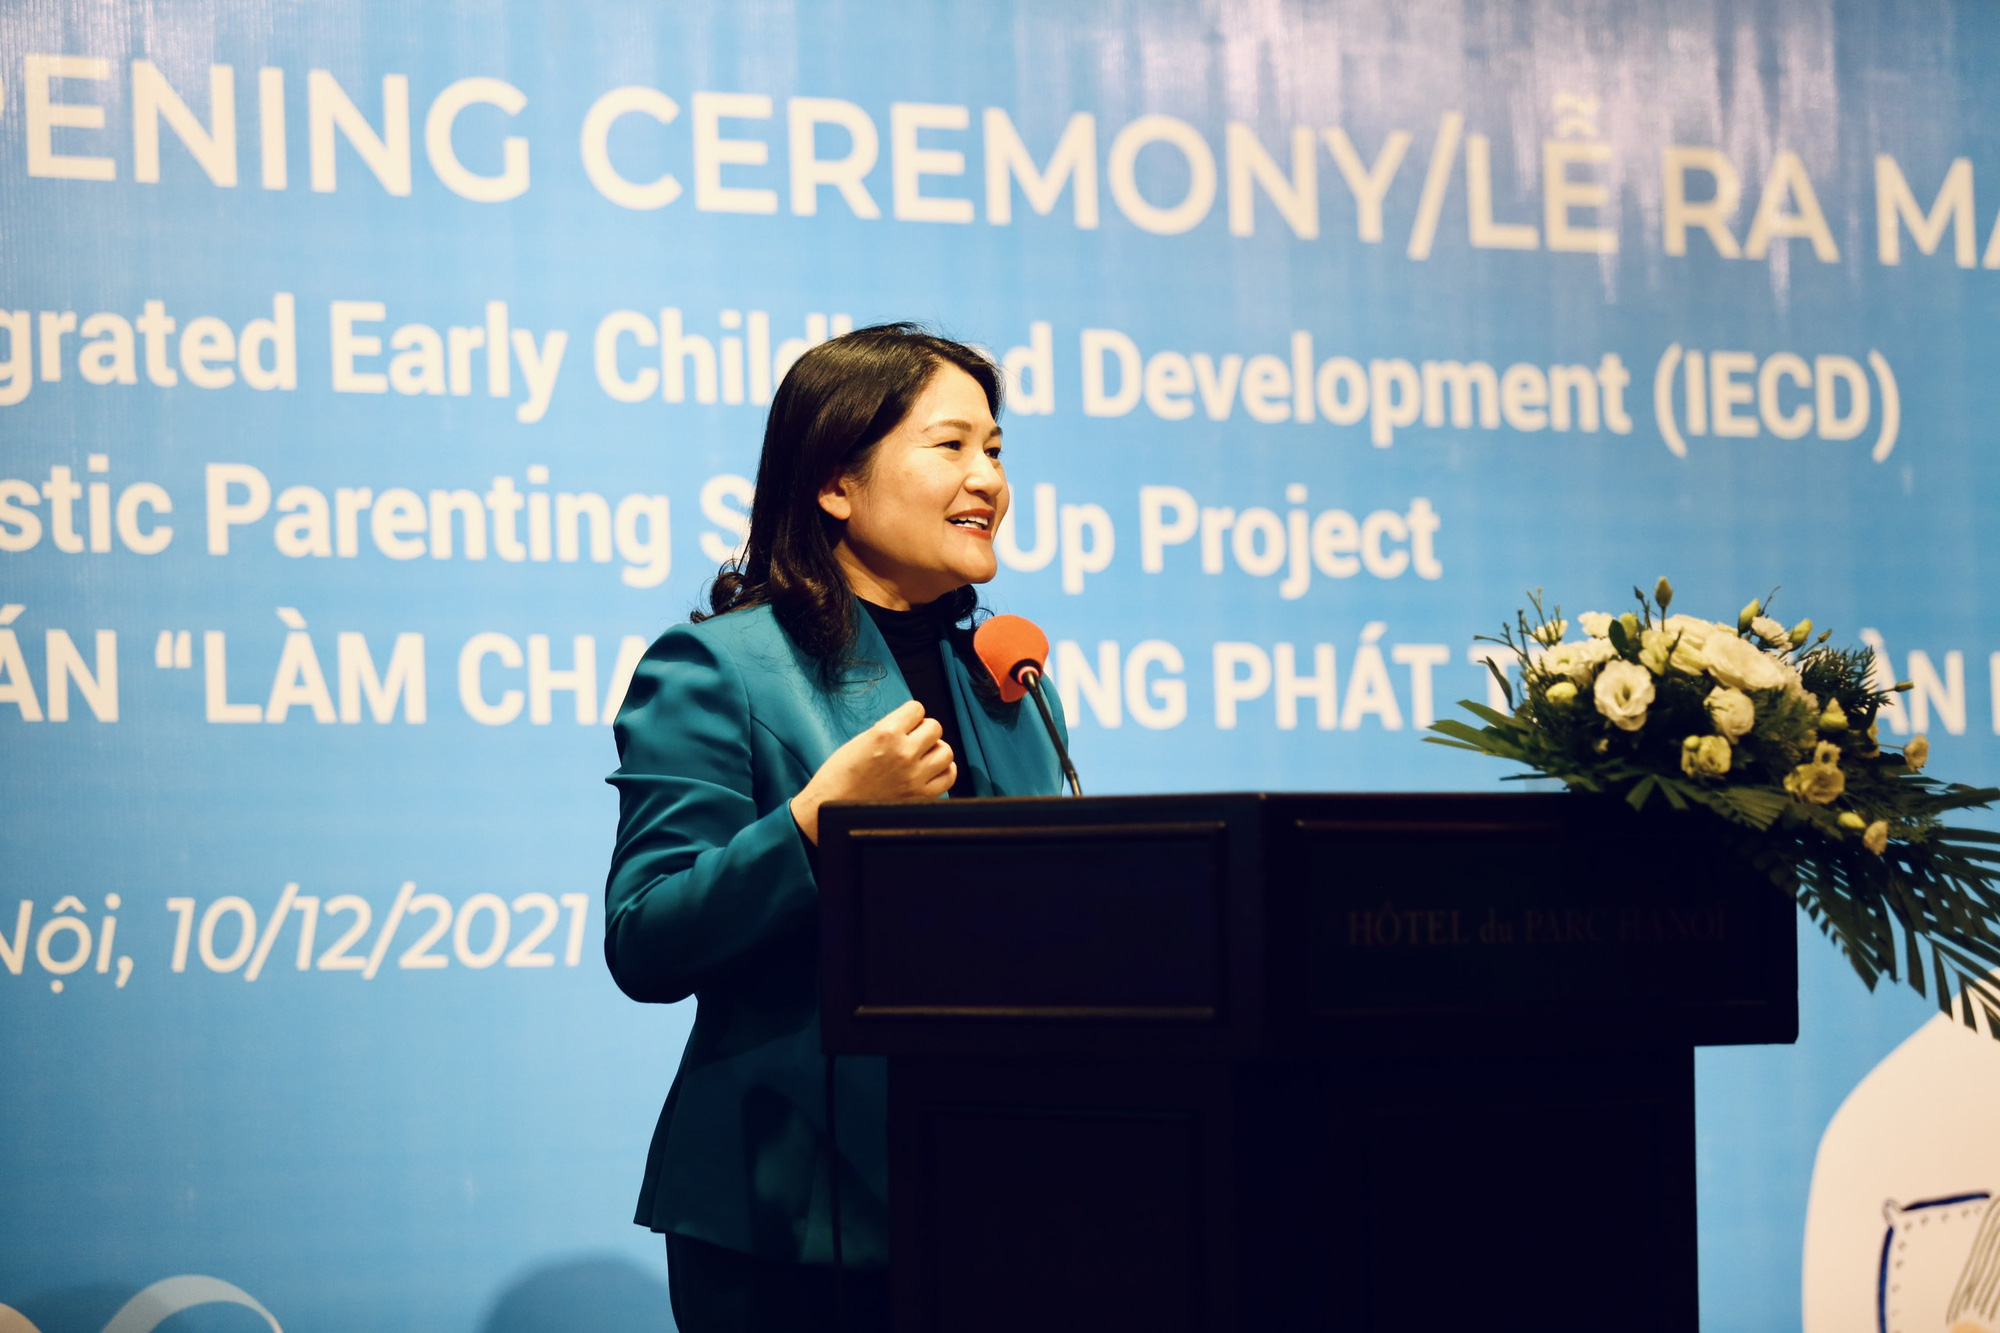 The Human Safety của Generali đầu tư hơn 1 triệu euro cho trẻ em Việt Nam - Ảnh 2.